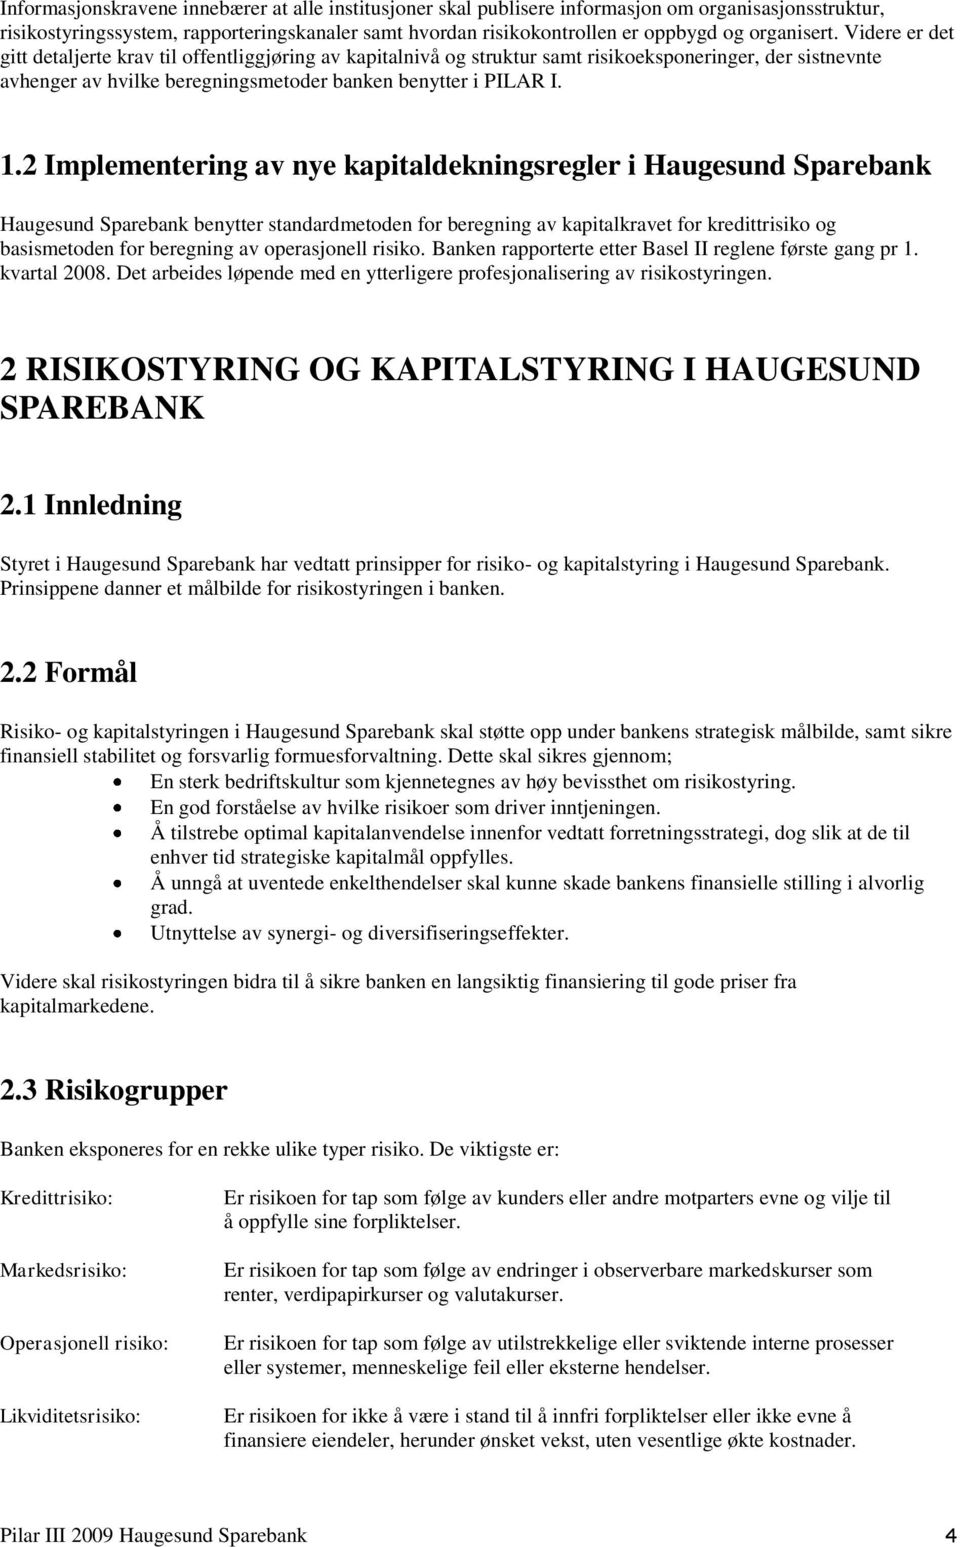 1.2 Implementering av nye kapitaldekningsregler i Haugesund Sparebank Haugesund Sparebank benytter standardmetoden for beregning av kapitalkravet for kredittrisiko og basismetoden for beregning av